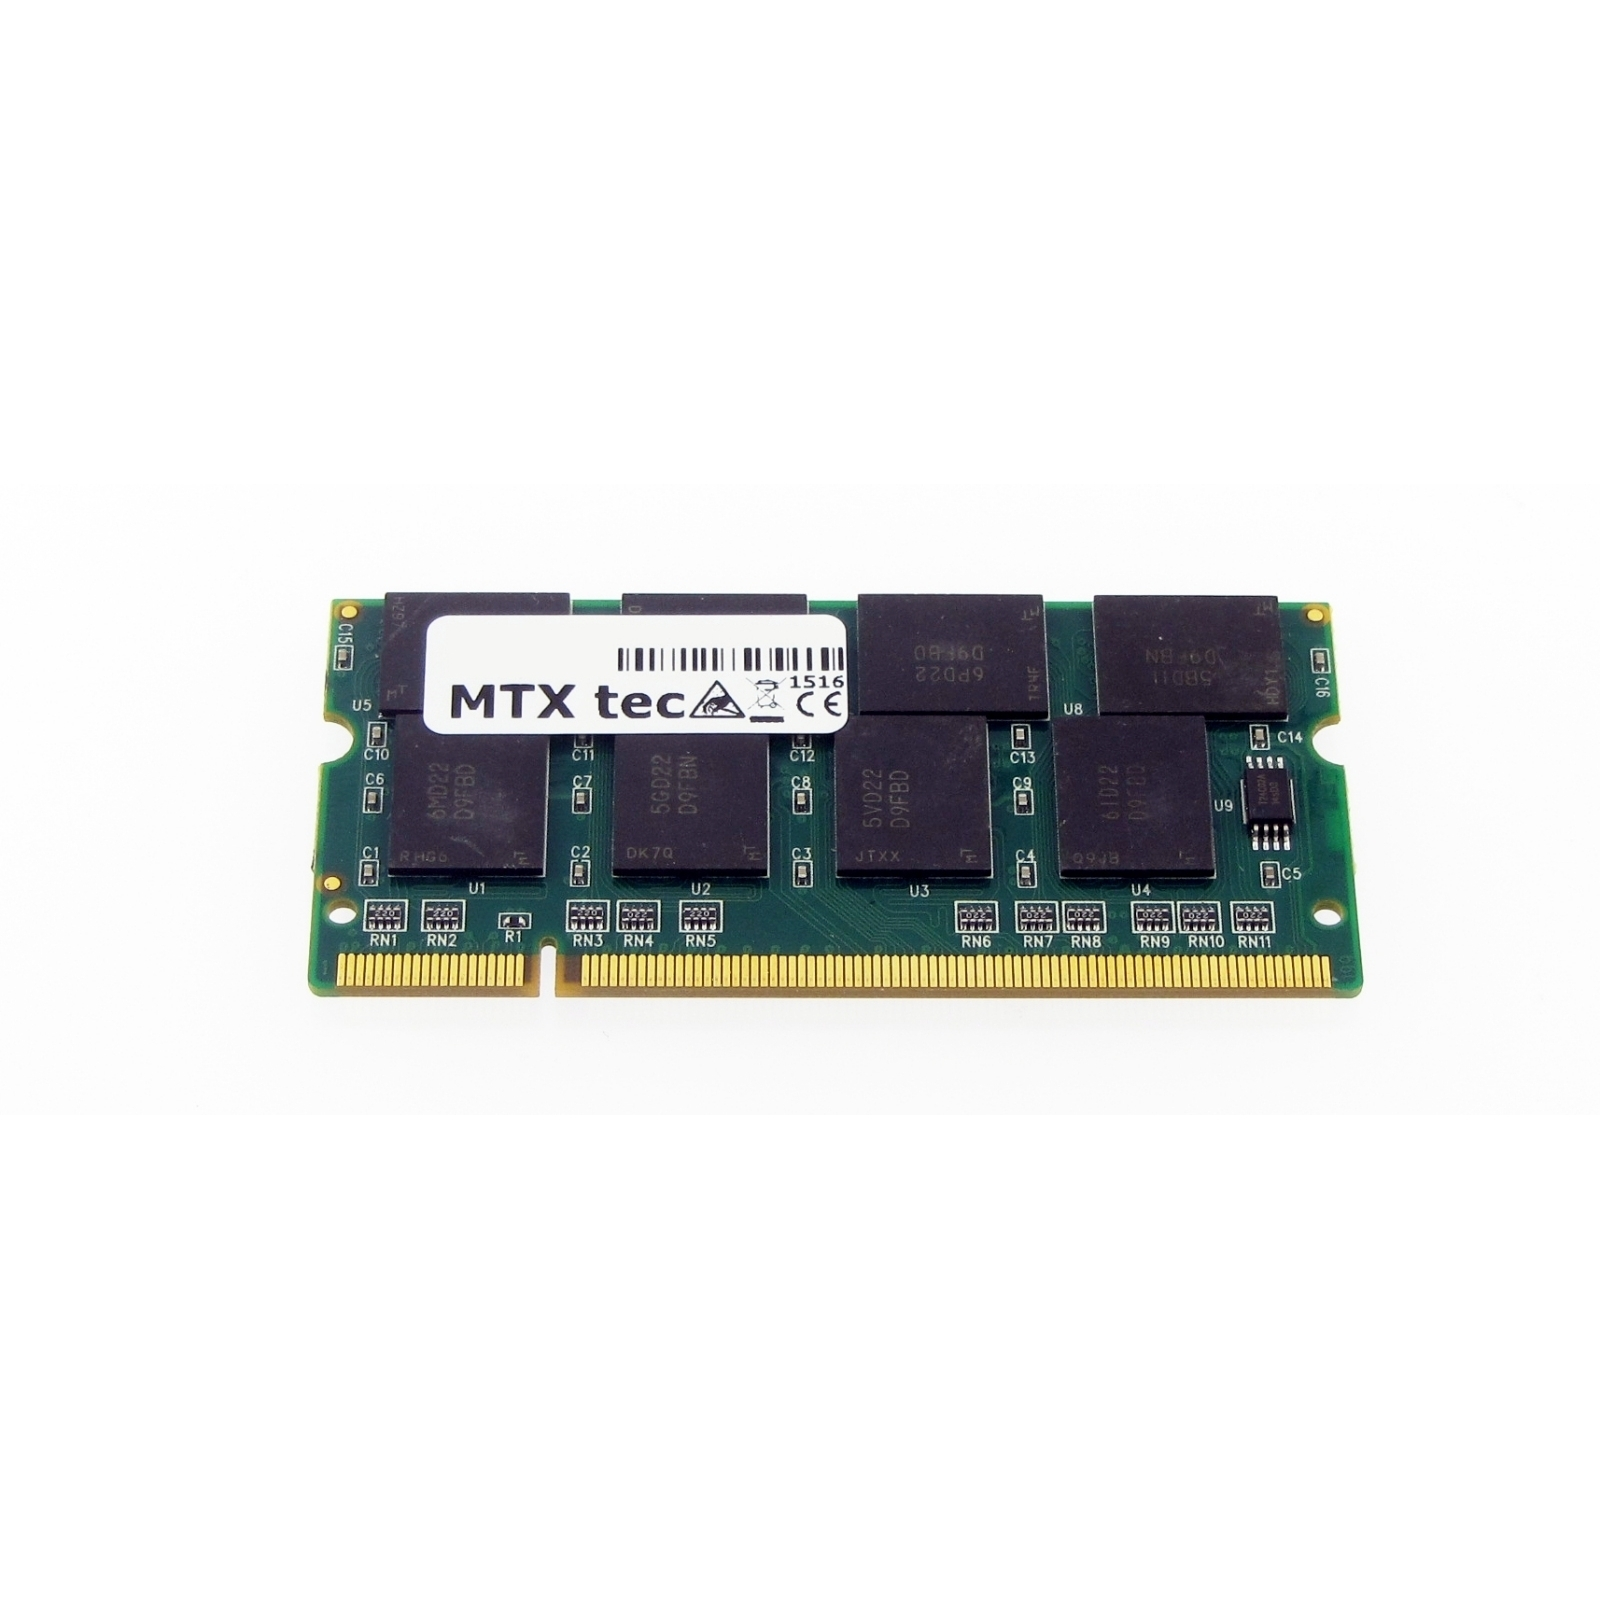 Aspire RAM DDR 1362LM für MB Arbeitsspeicher Notebook-Speicher 512 ACER MB MTXTEC 512